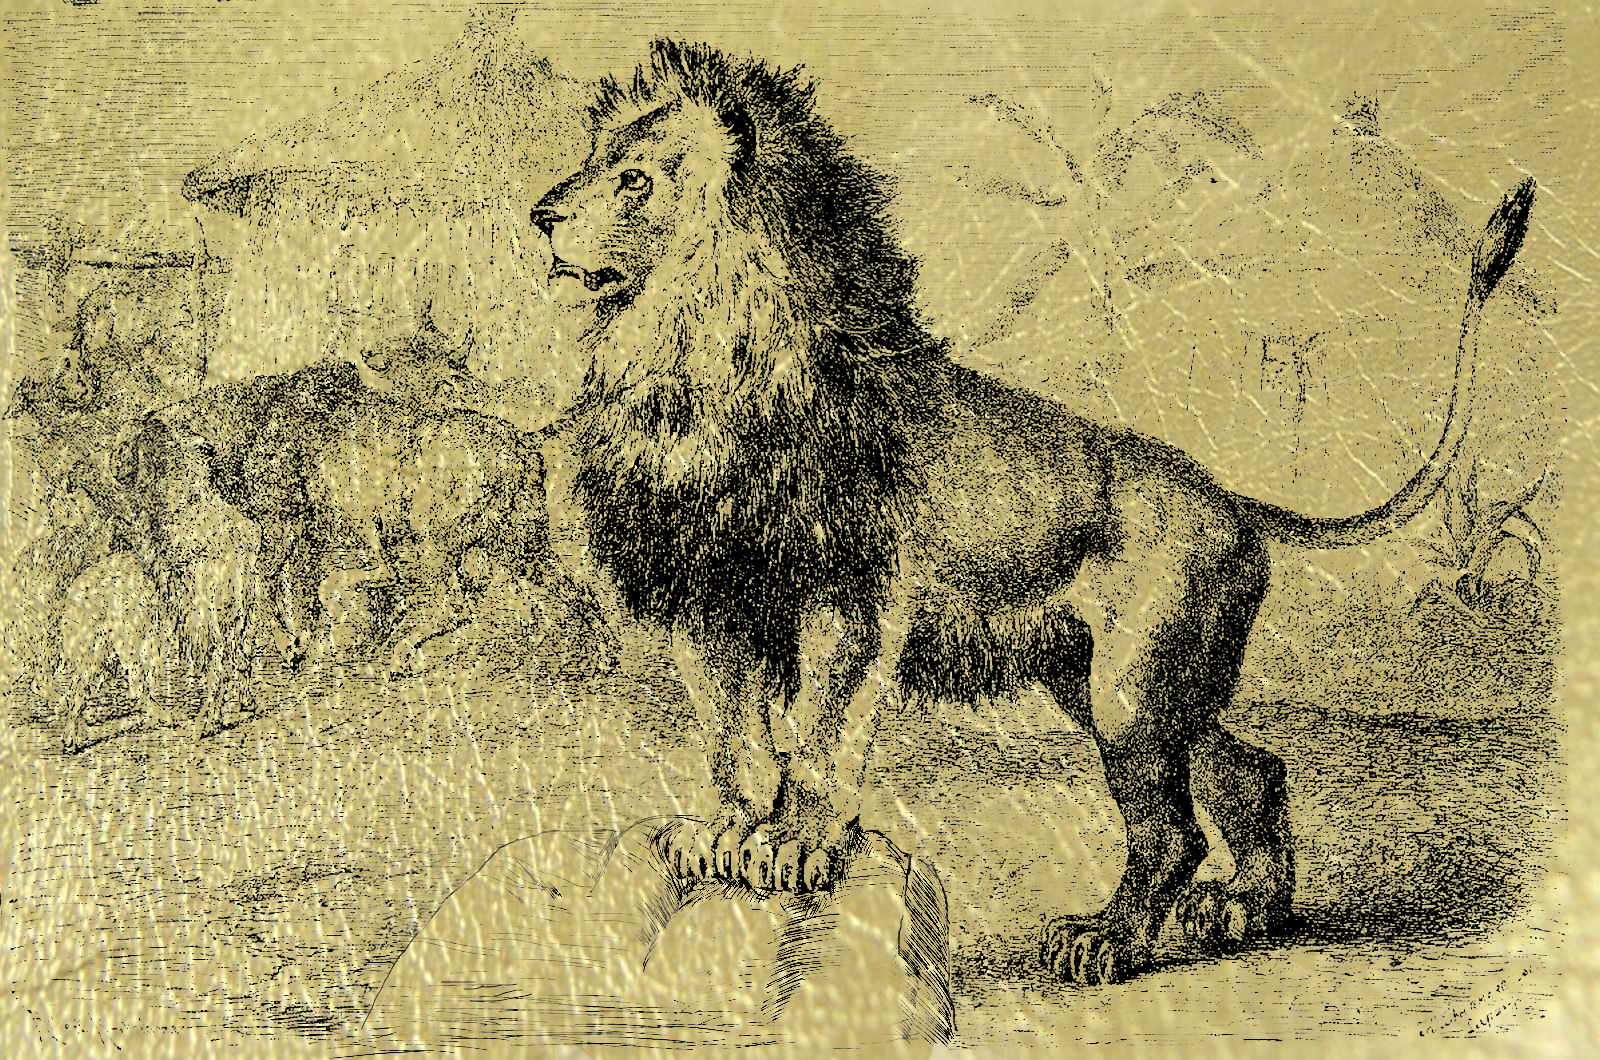  Лев на скале - картина из сусального золота